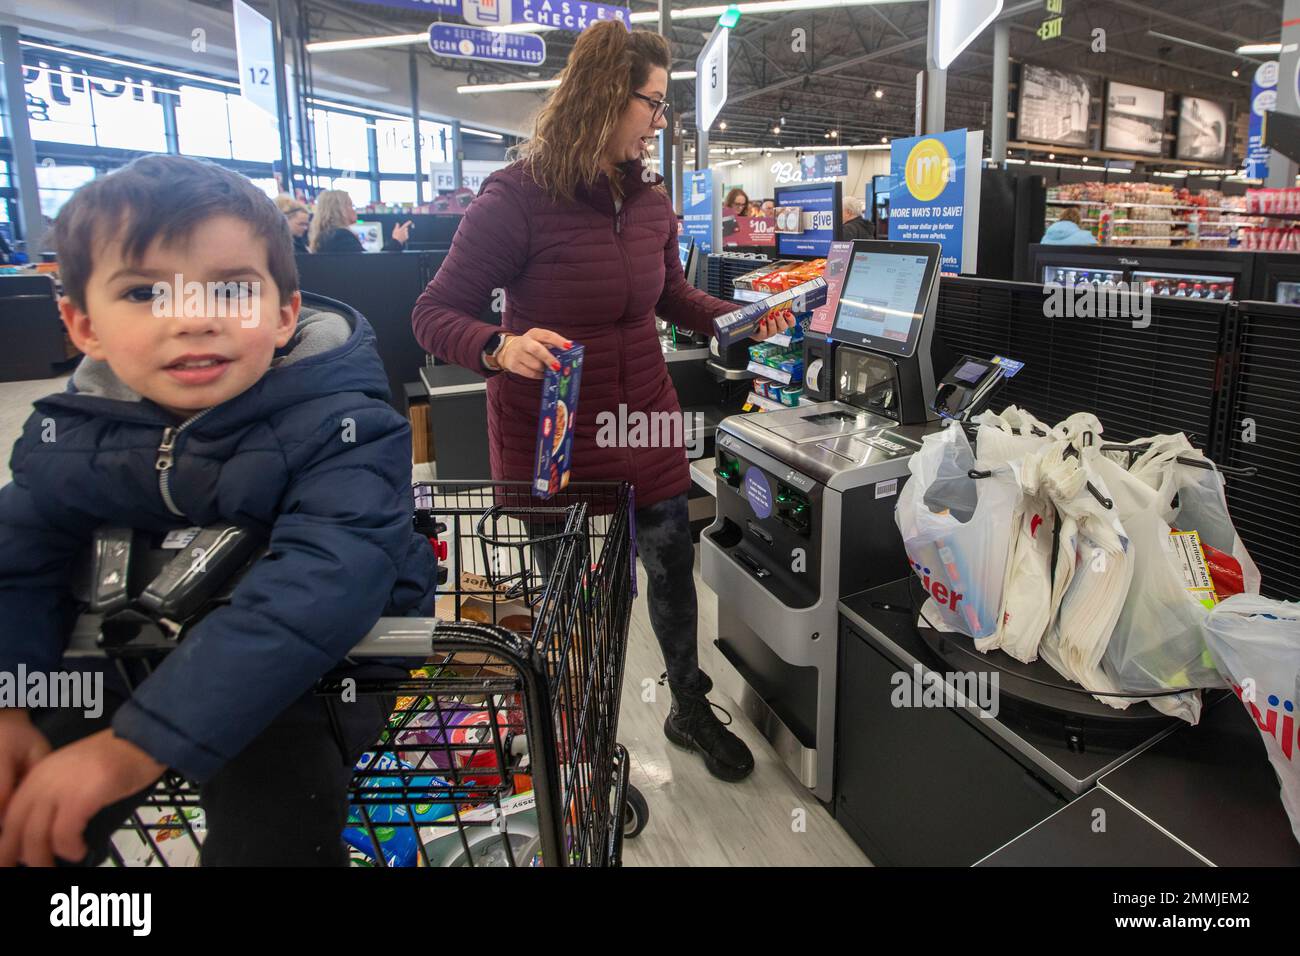 Macomb Twp., Michigan - Uno shopper utilizza una stazione self-checkout in un negozio Meijer Grocery, recentemente aperto nella periferia di Detroit. Il negozio di alimentari-solo c Foto Stock